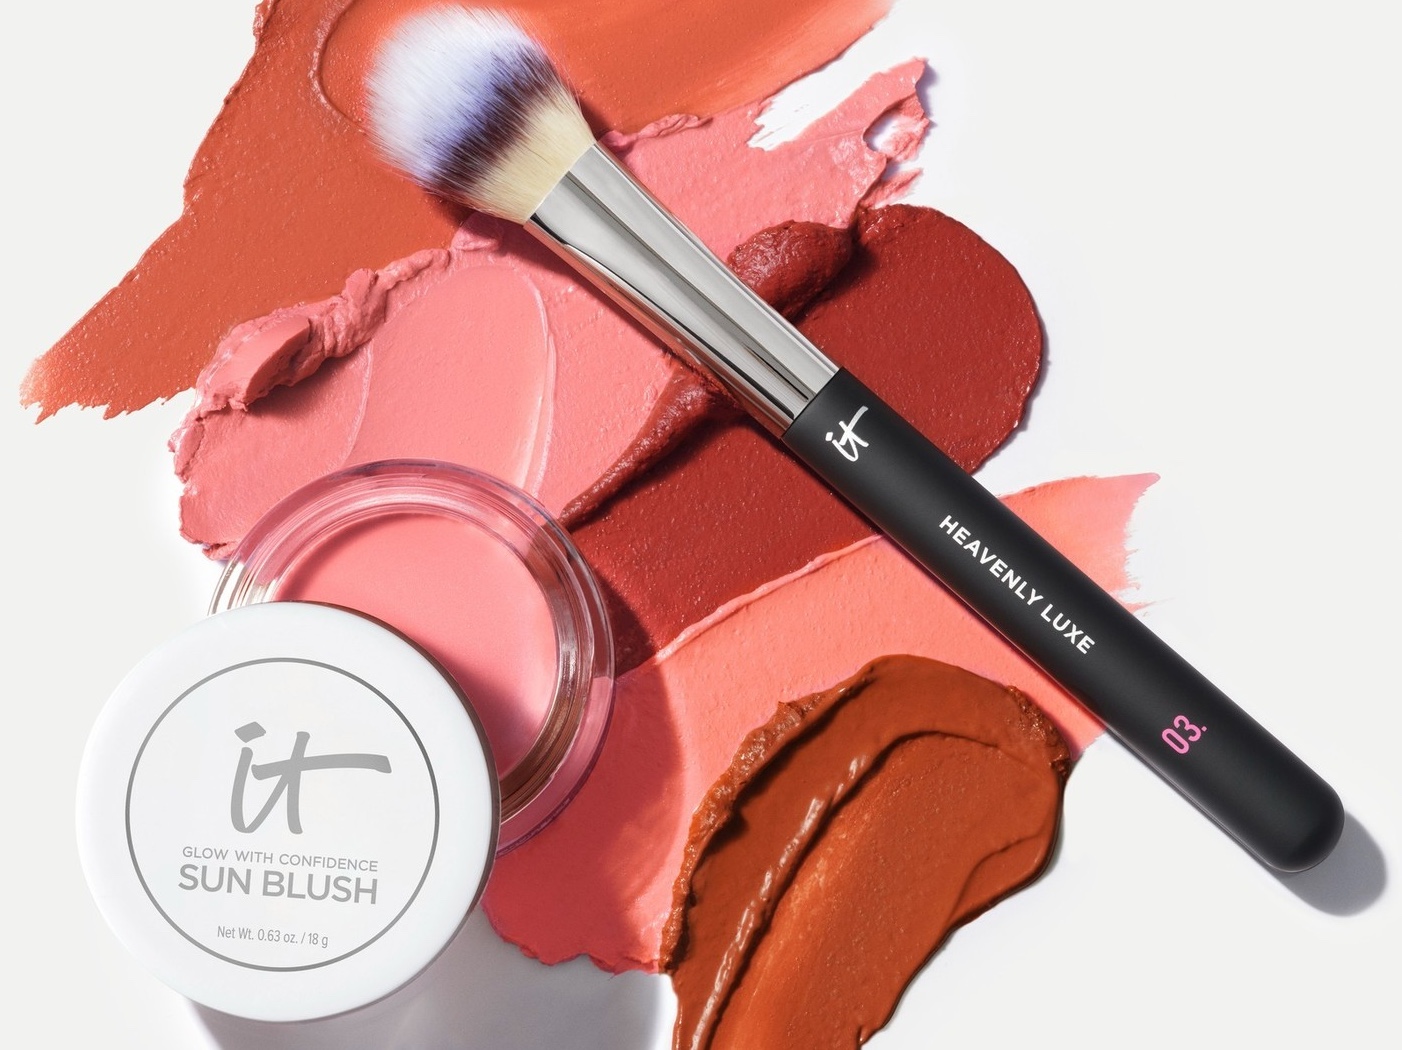 Makeup swatches, a makeup brush and a pot of IT Cosmetics Sun Blush